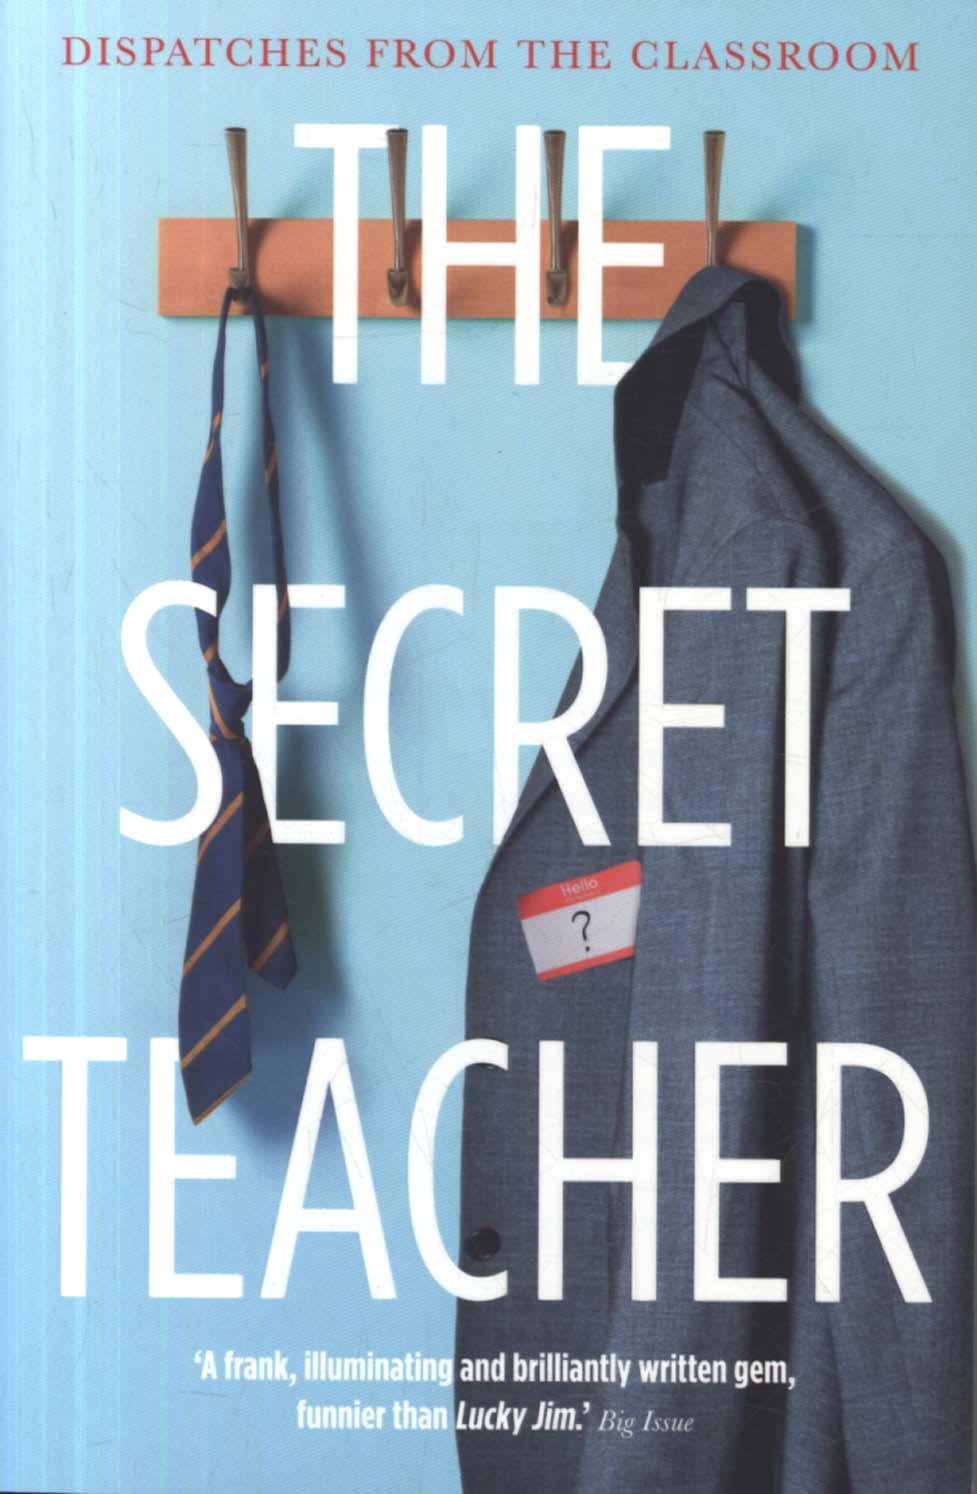 Secret Teacher